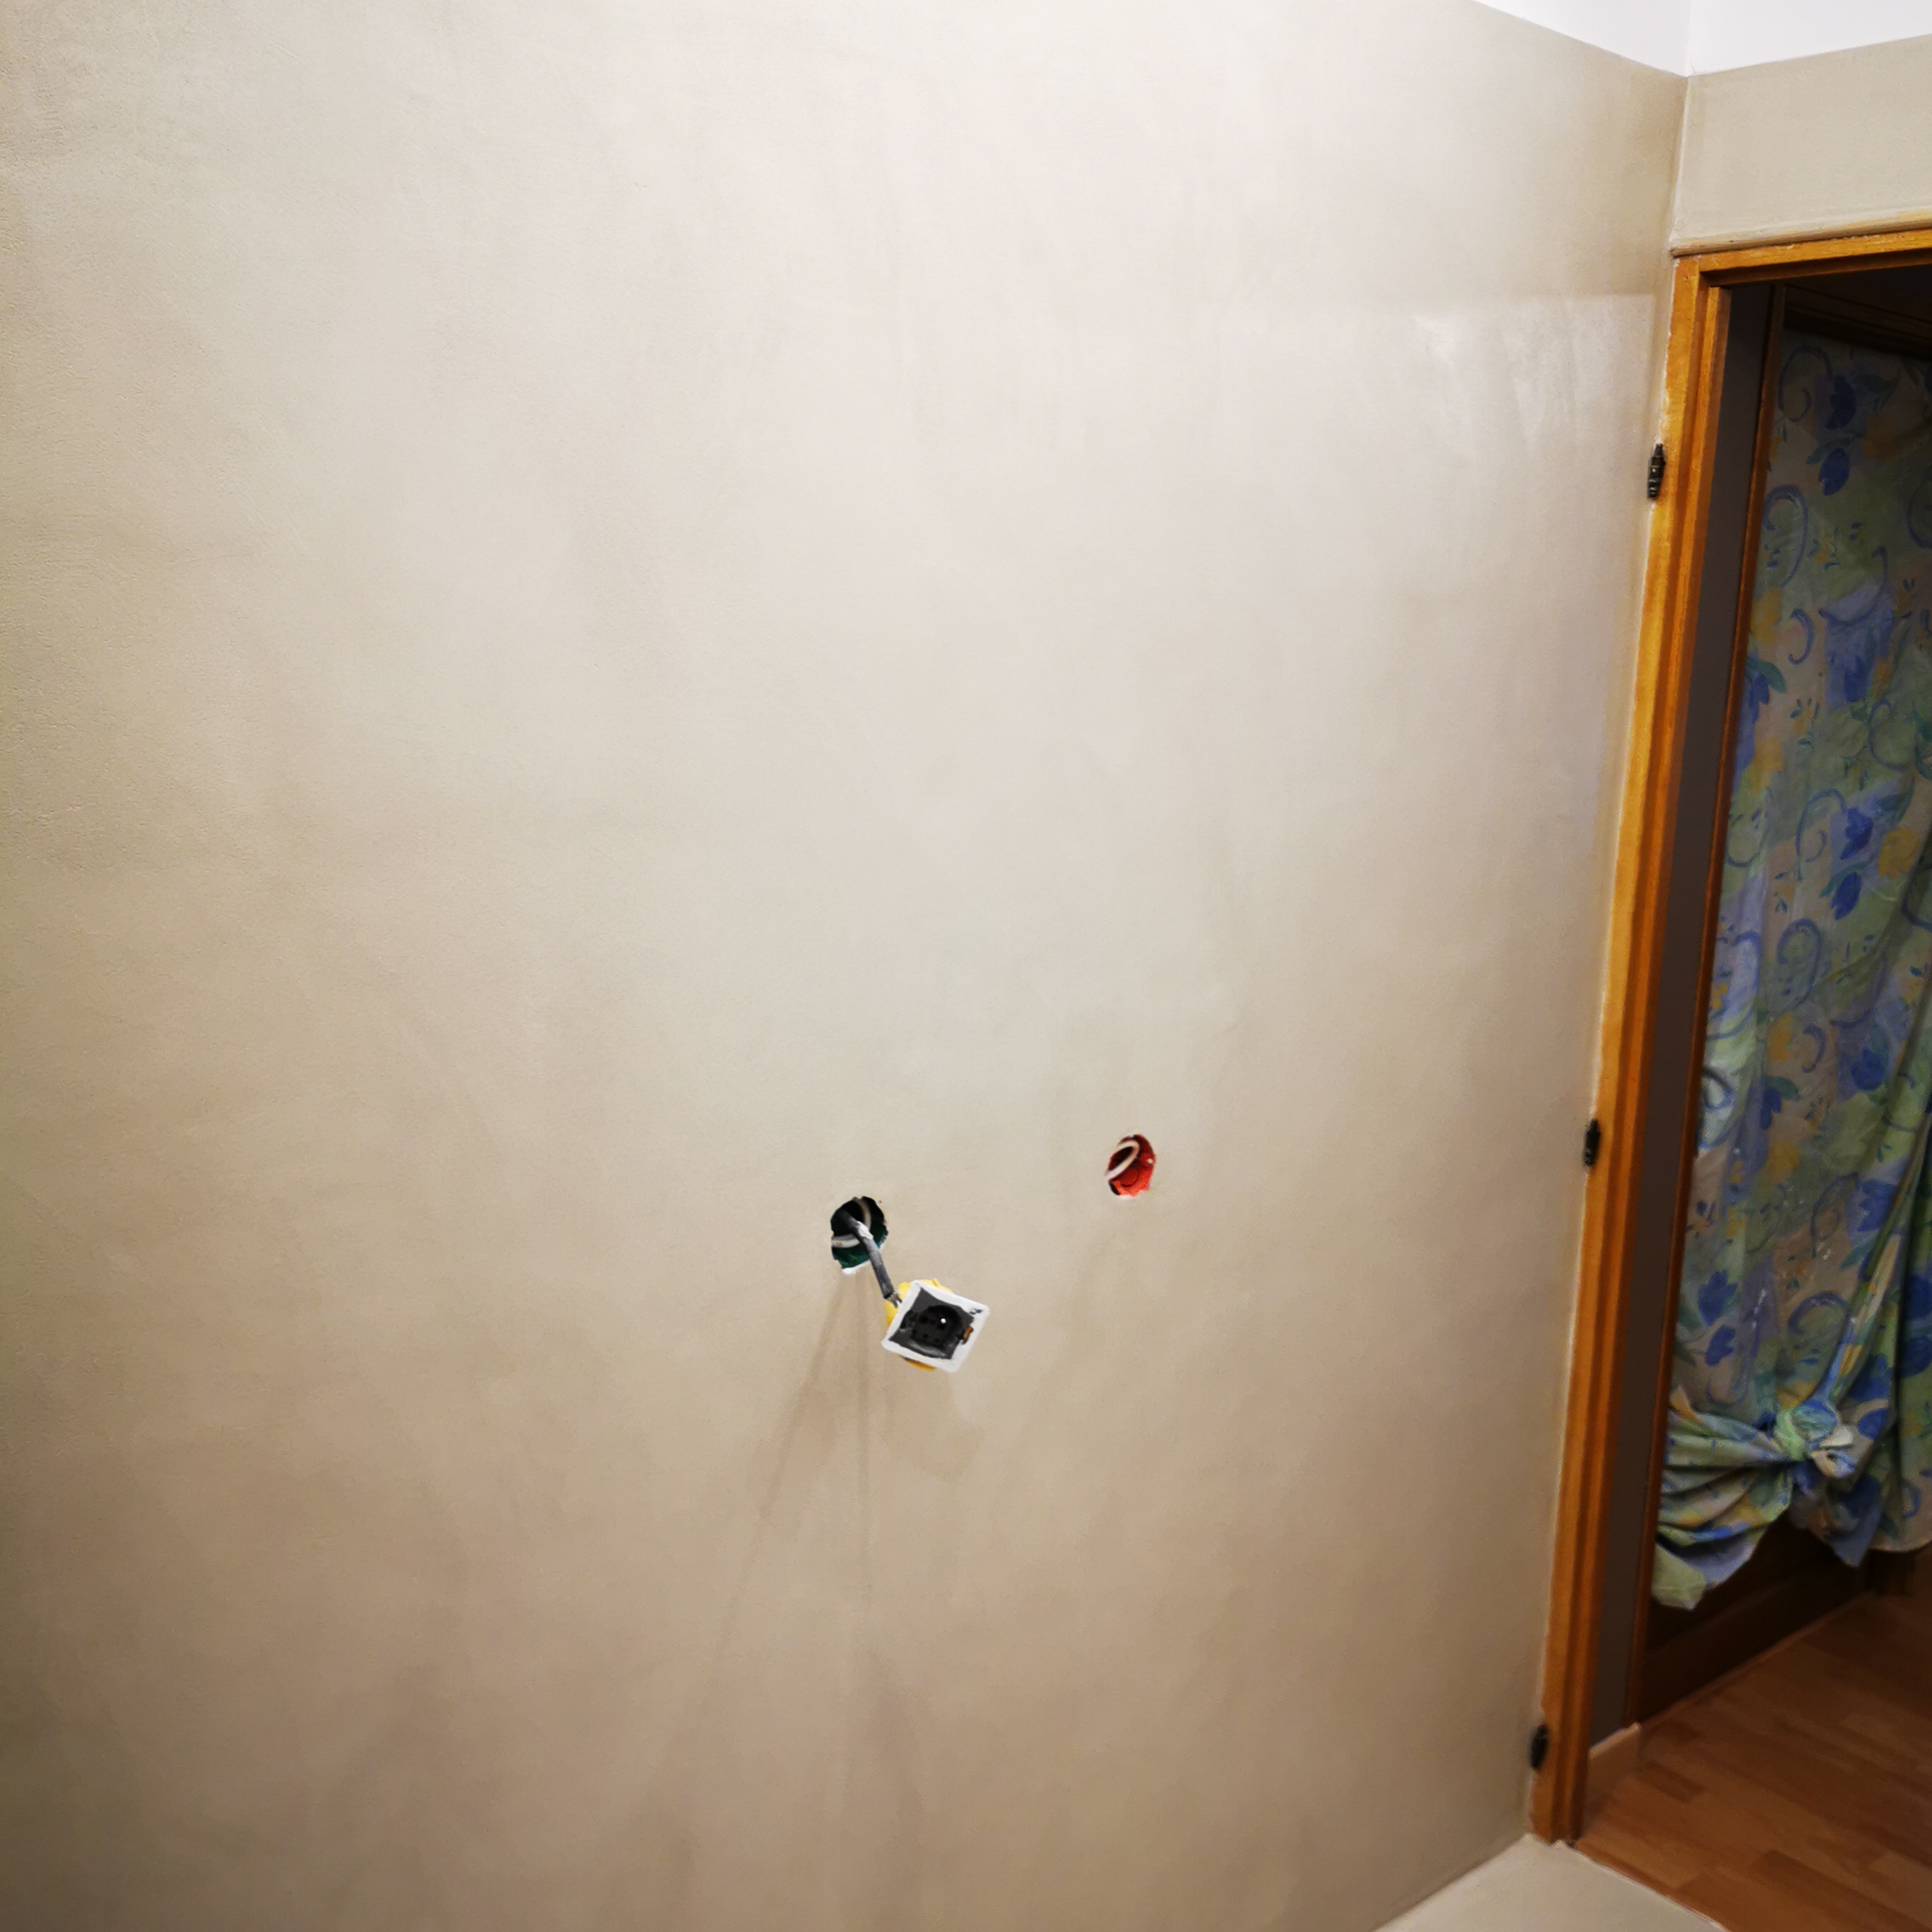 rénovation d'une salle de bain en béton ciré vernis soyeux couleur corde À Camblanes-et-Meynac proche de Bordeaux pour un particulier Scalinfinition33